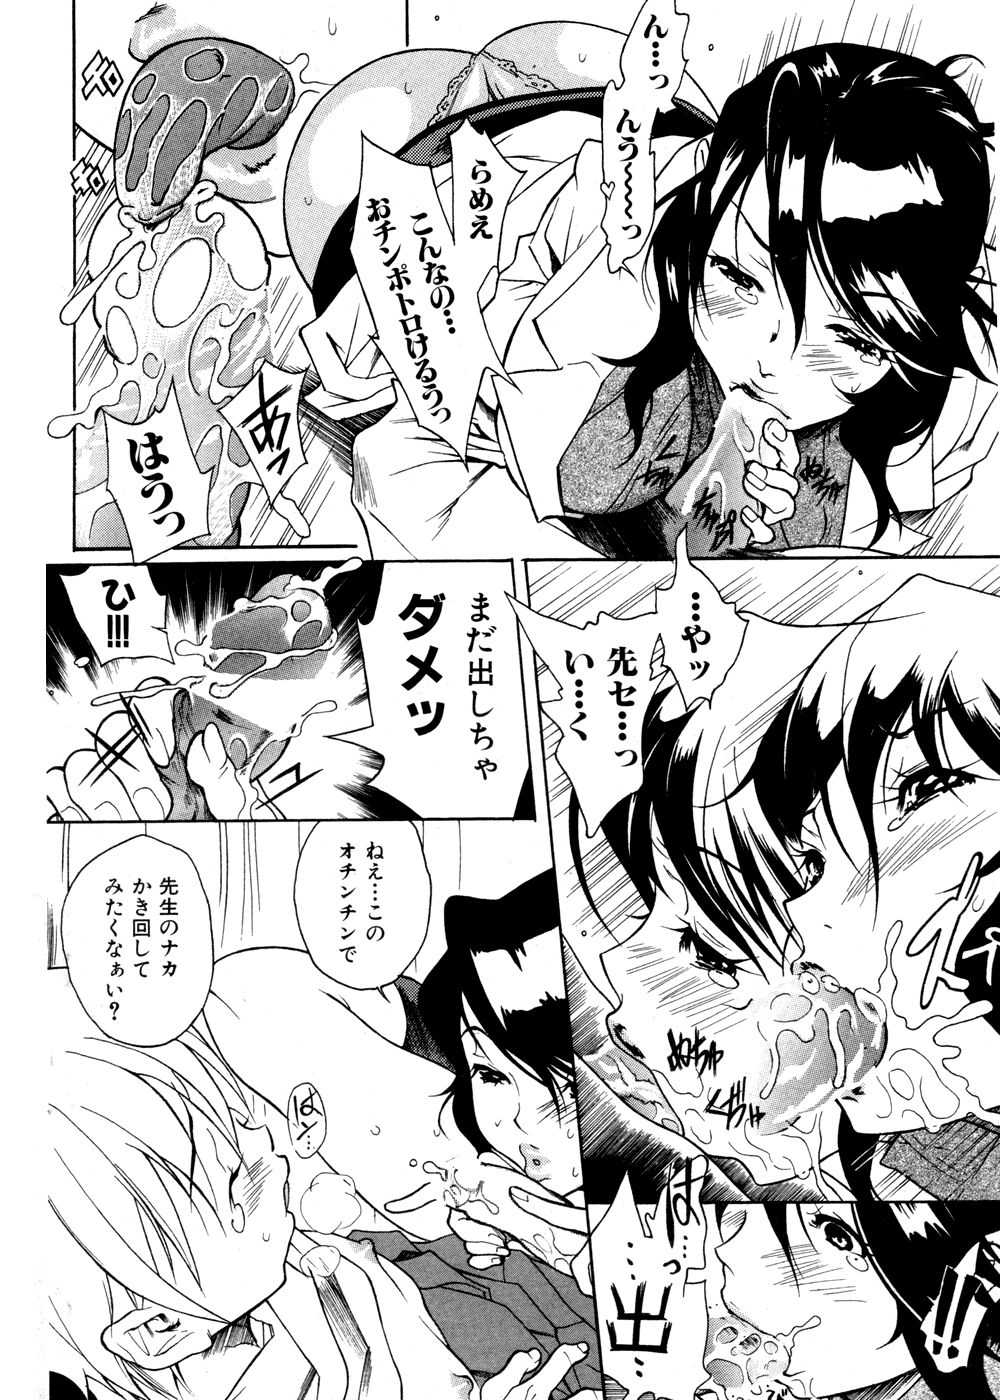 [2007.02.15]Comic Kairakuten Beast Volume 16 